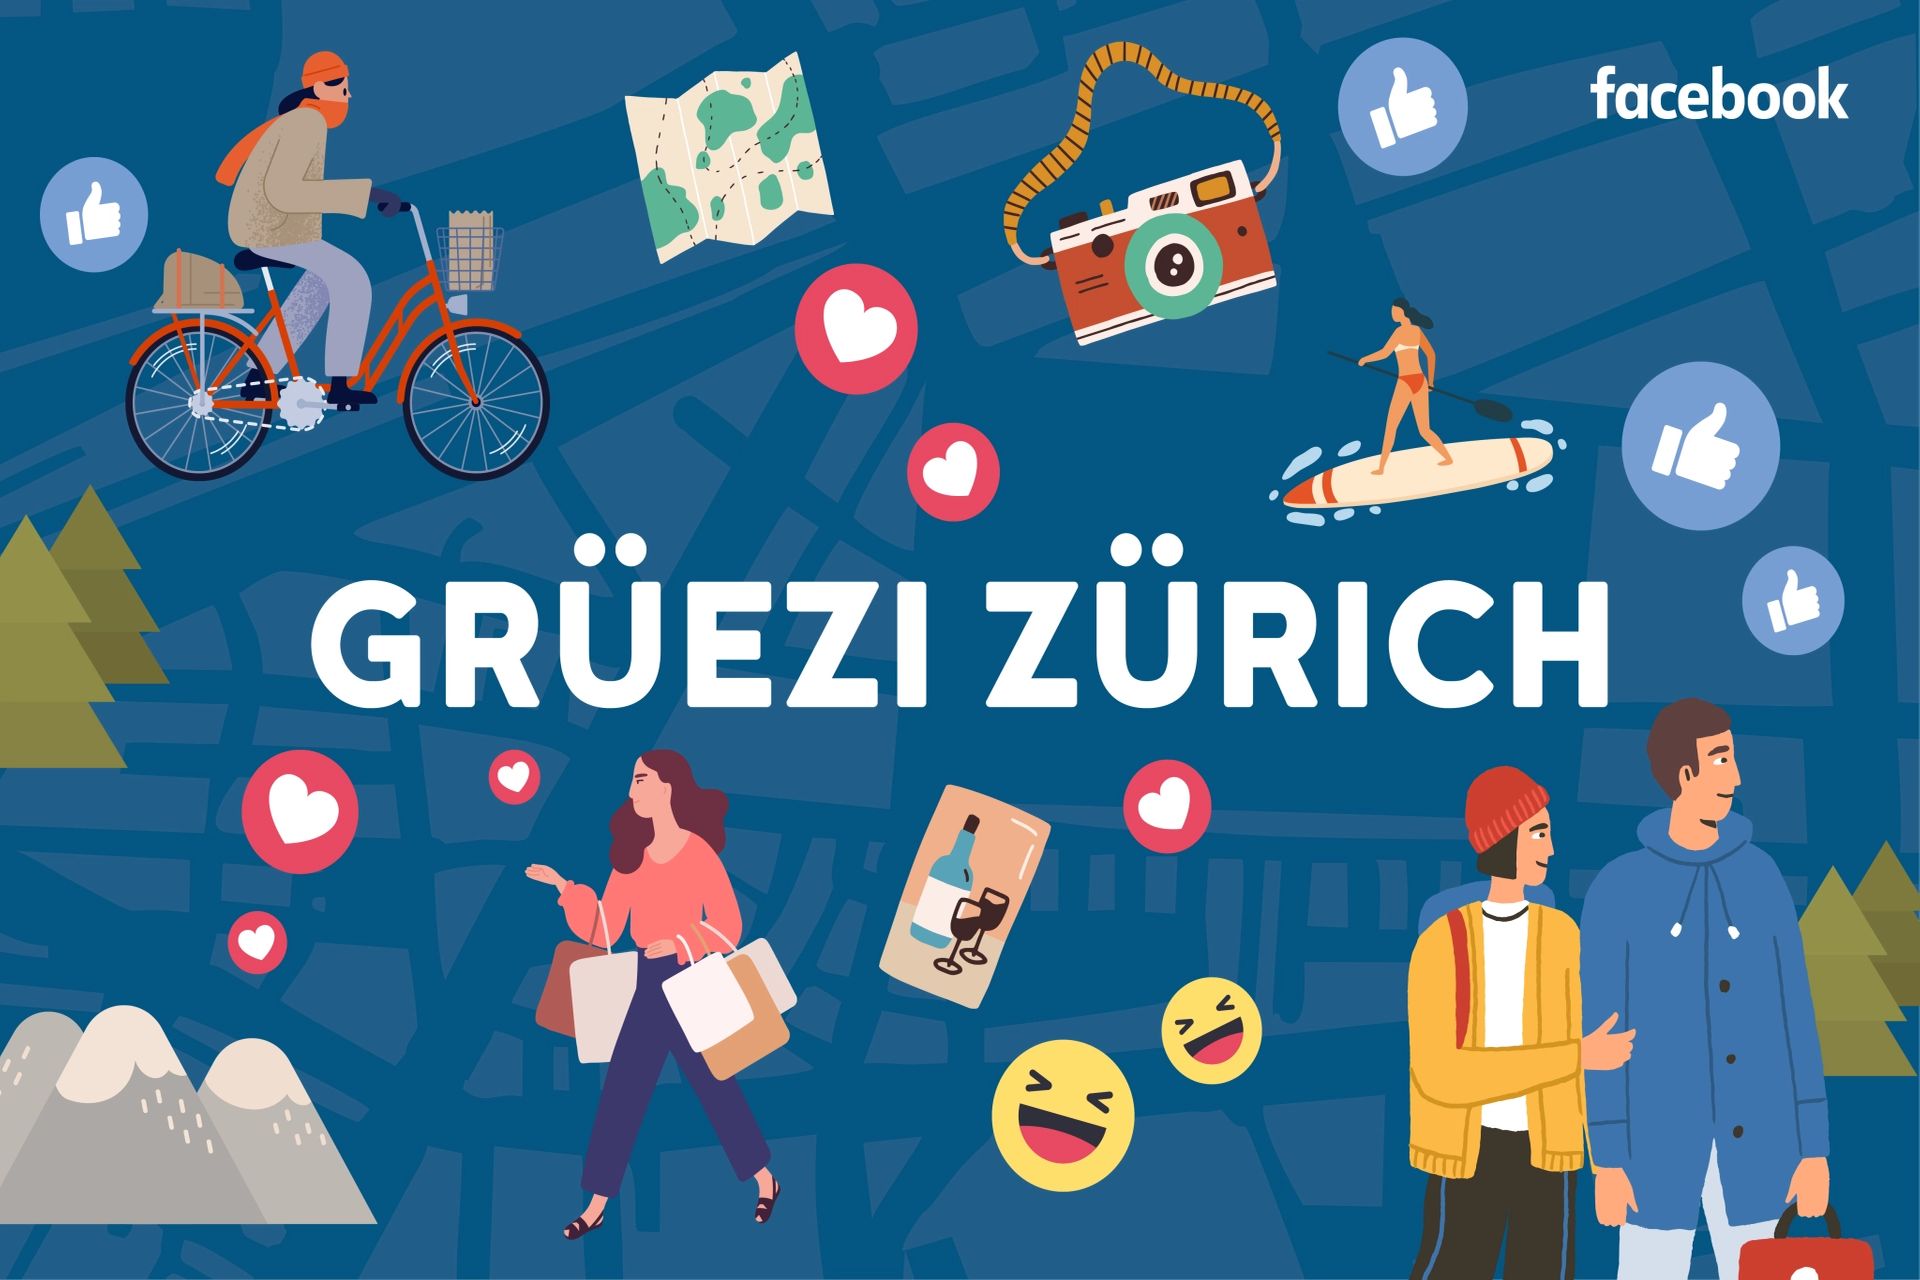 La società Meta di Mark Zuckerberg ha presentato la Community City Guide di Zurigo, un “manuale” di fruizione della città creato in collaborazione con cinque gruppi Facebook, il primo della Svizzera